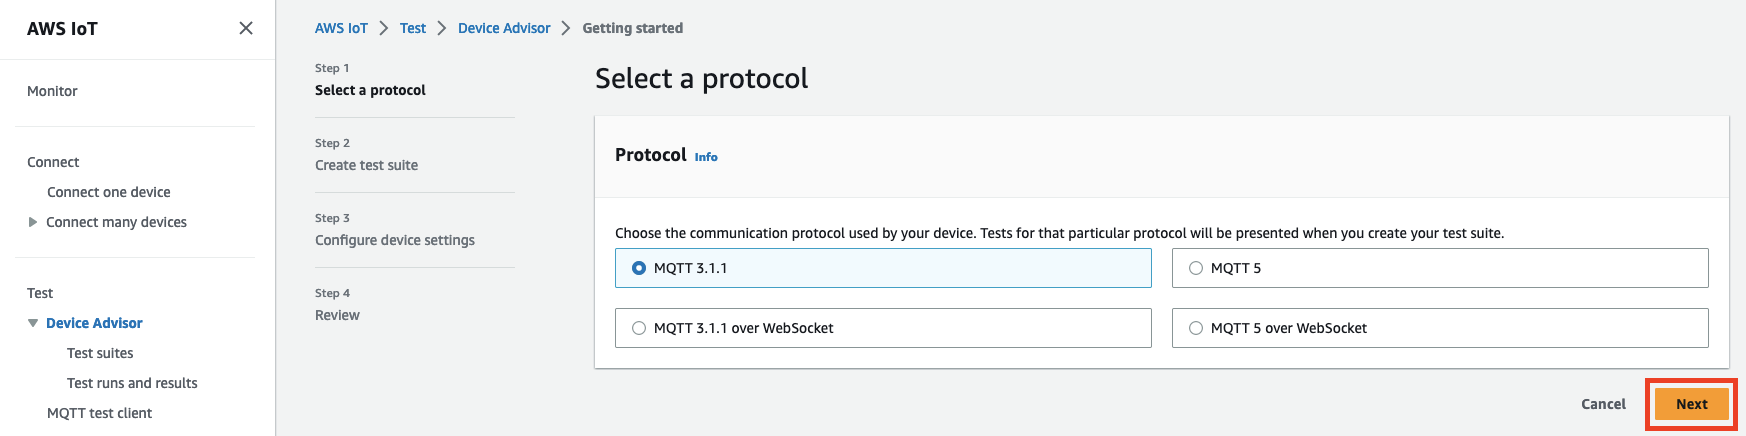 Device Advisor-Schnittstelle mit Optionen zur Auswahl eines Kommunikationsprotokolls (MQTT 3.1.1, MQTT 3.1.1 über, MQTT 5 WebSocket, MQTT 5 over WebSocket) zum Testen eines IoT-Geräts.